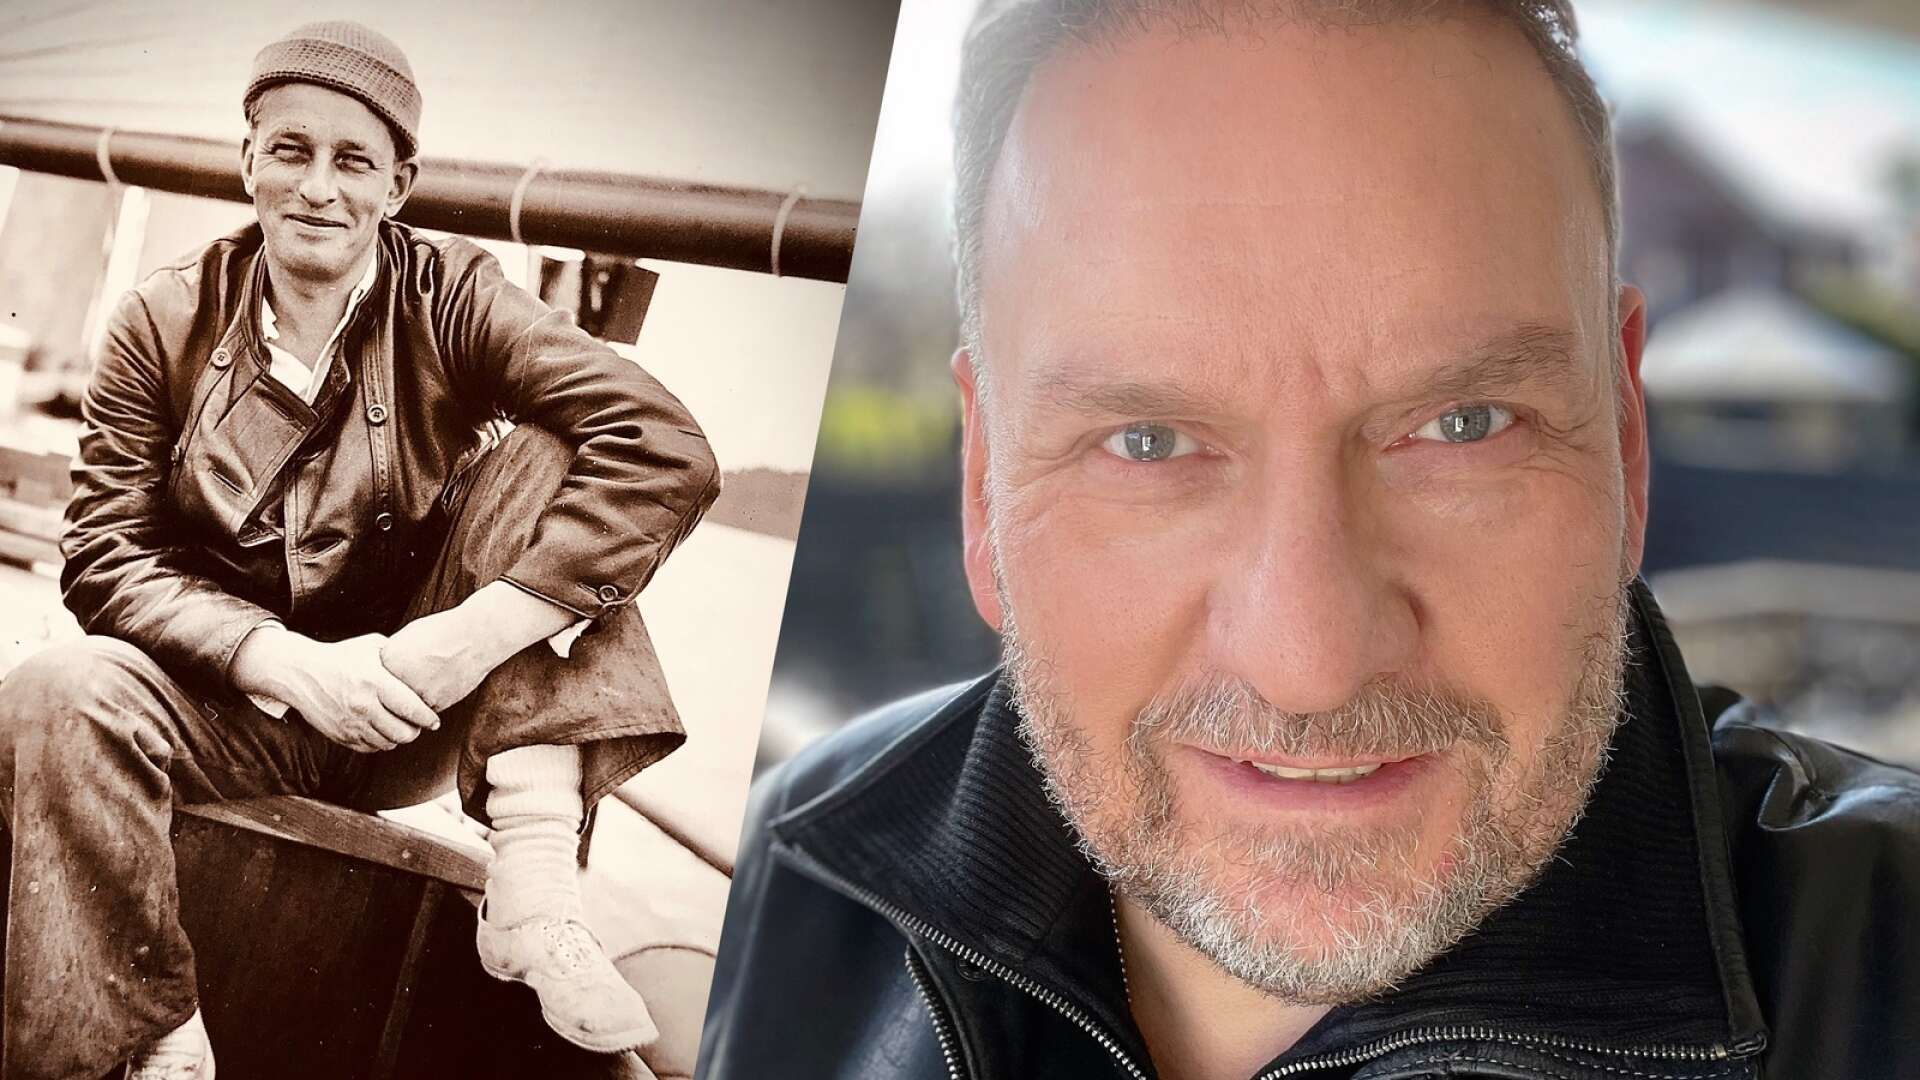 Filmaren och författaren Anders Nilsson är aktuell med ”Spionernas krig” där bland andra Teddy Ternberg (till vänster), som under andra världskriget var chef för den svenska hemliga militära underrättelsetjänsten, är med.